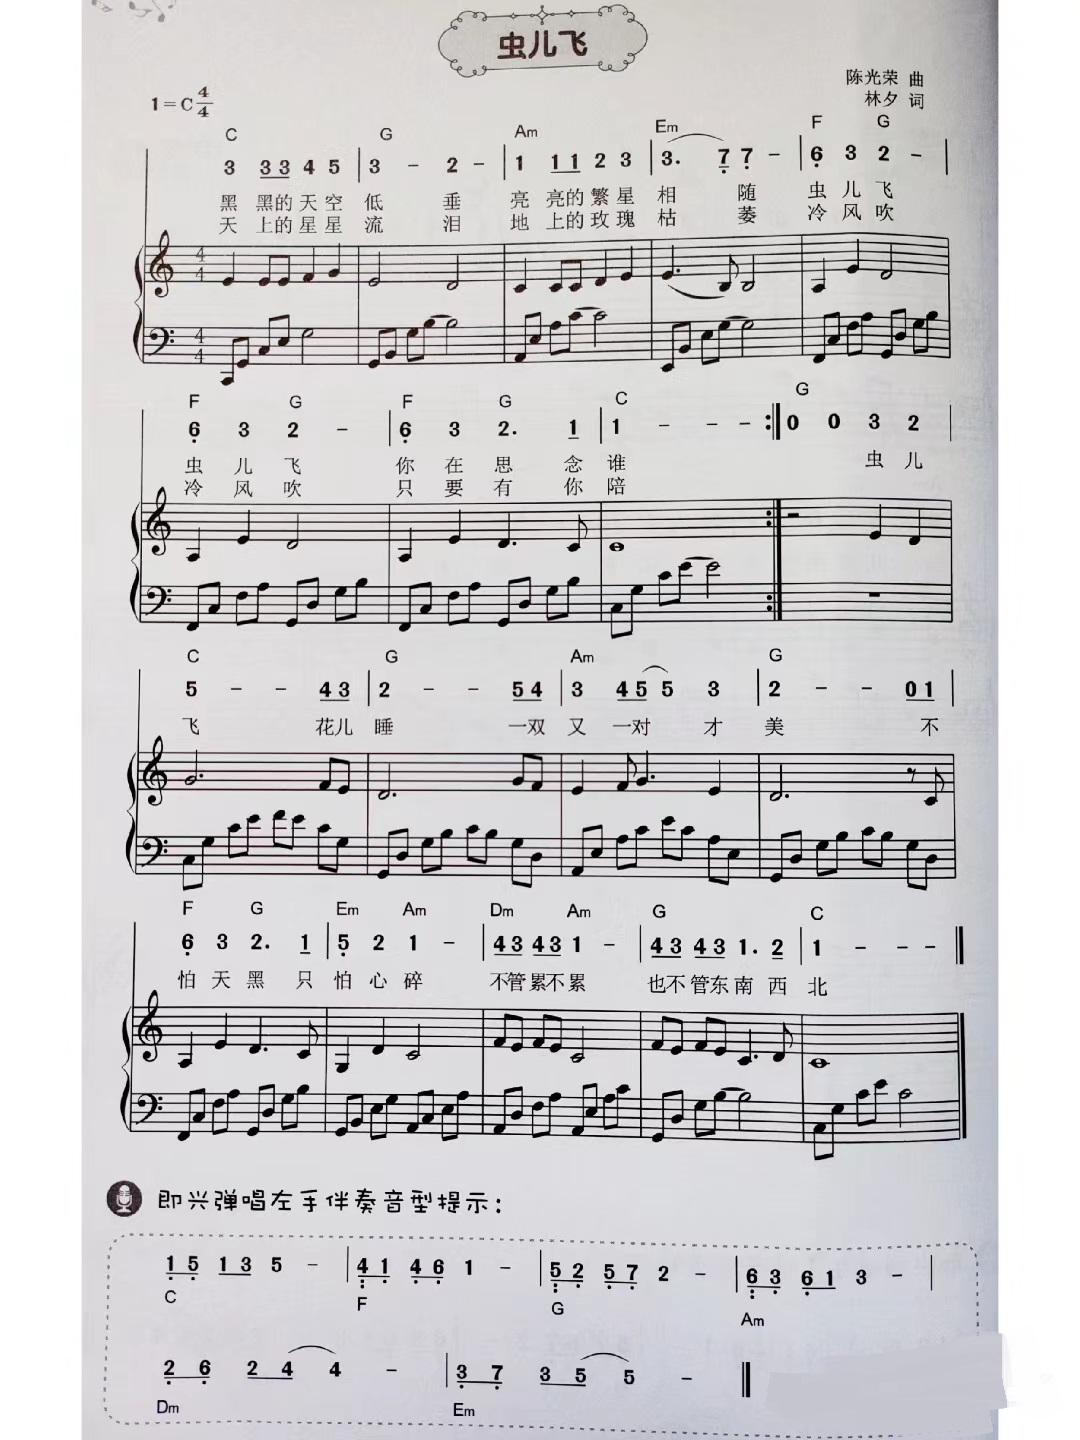 【虫儿飞】的钢琴谱简谱 - 儿歌